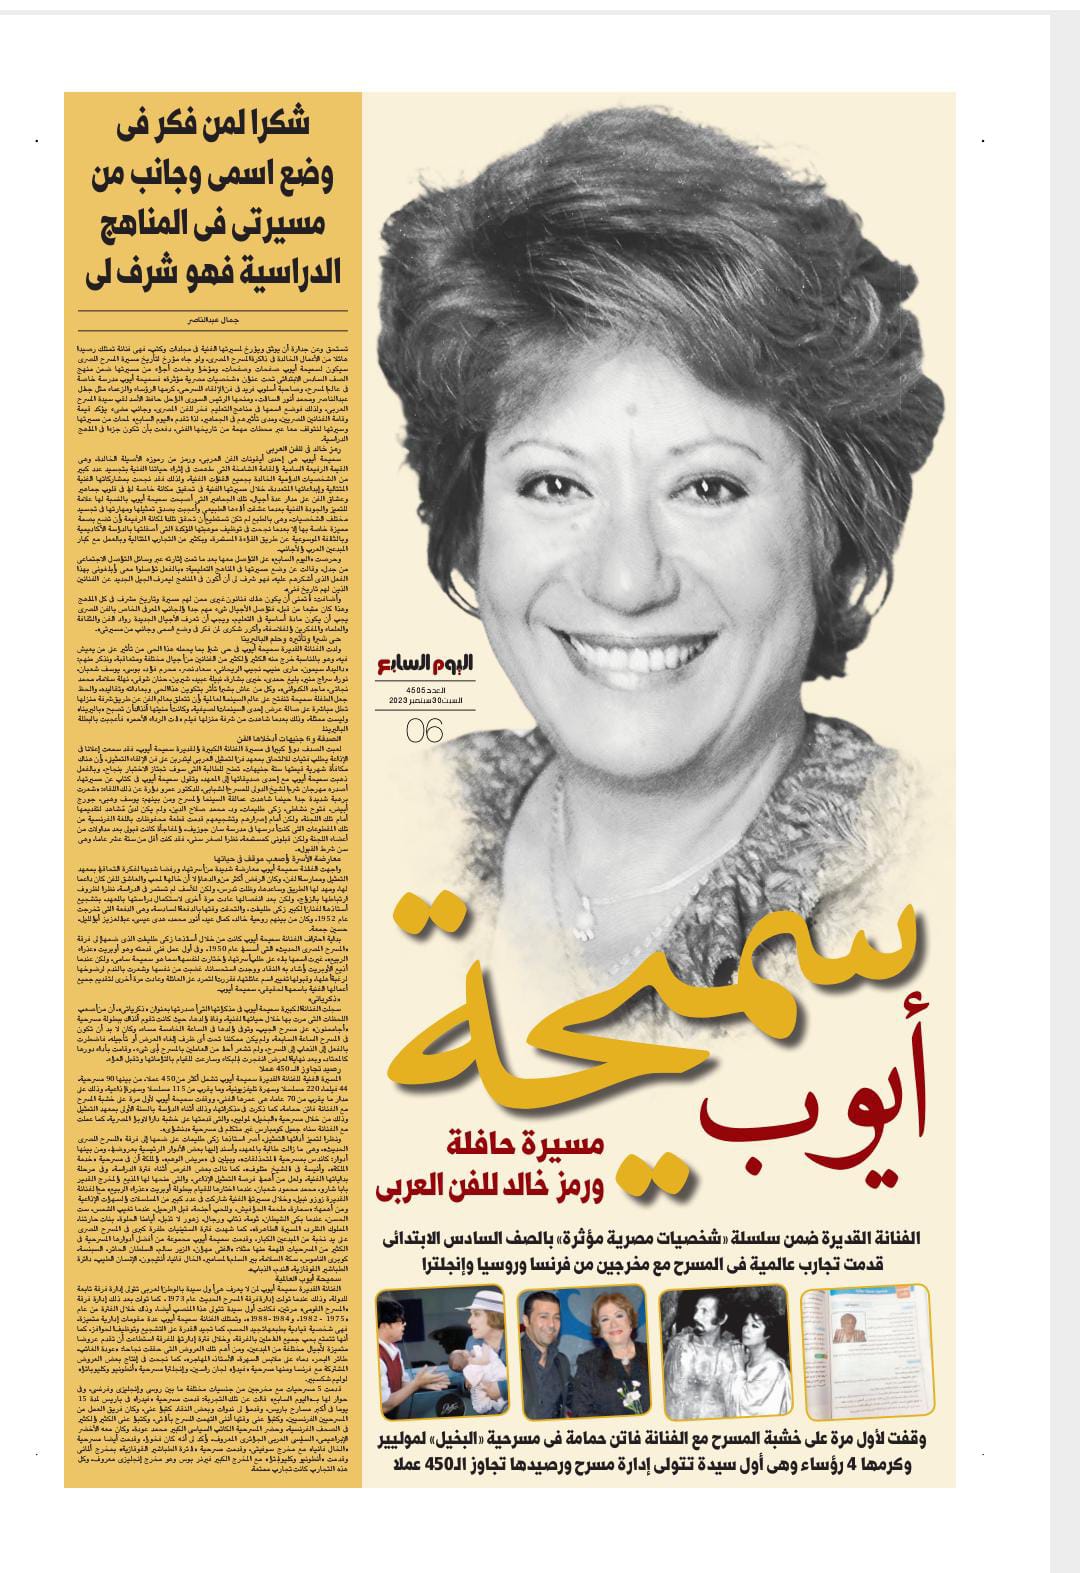 صفحة العدد اليوم من جريدة اليوم السابع